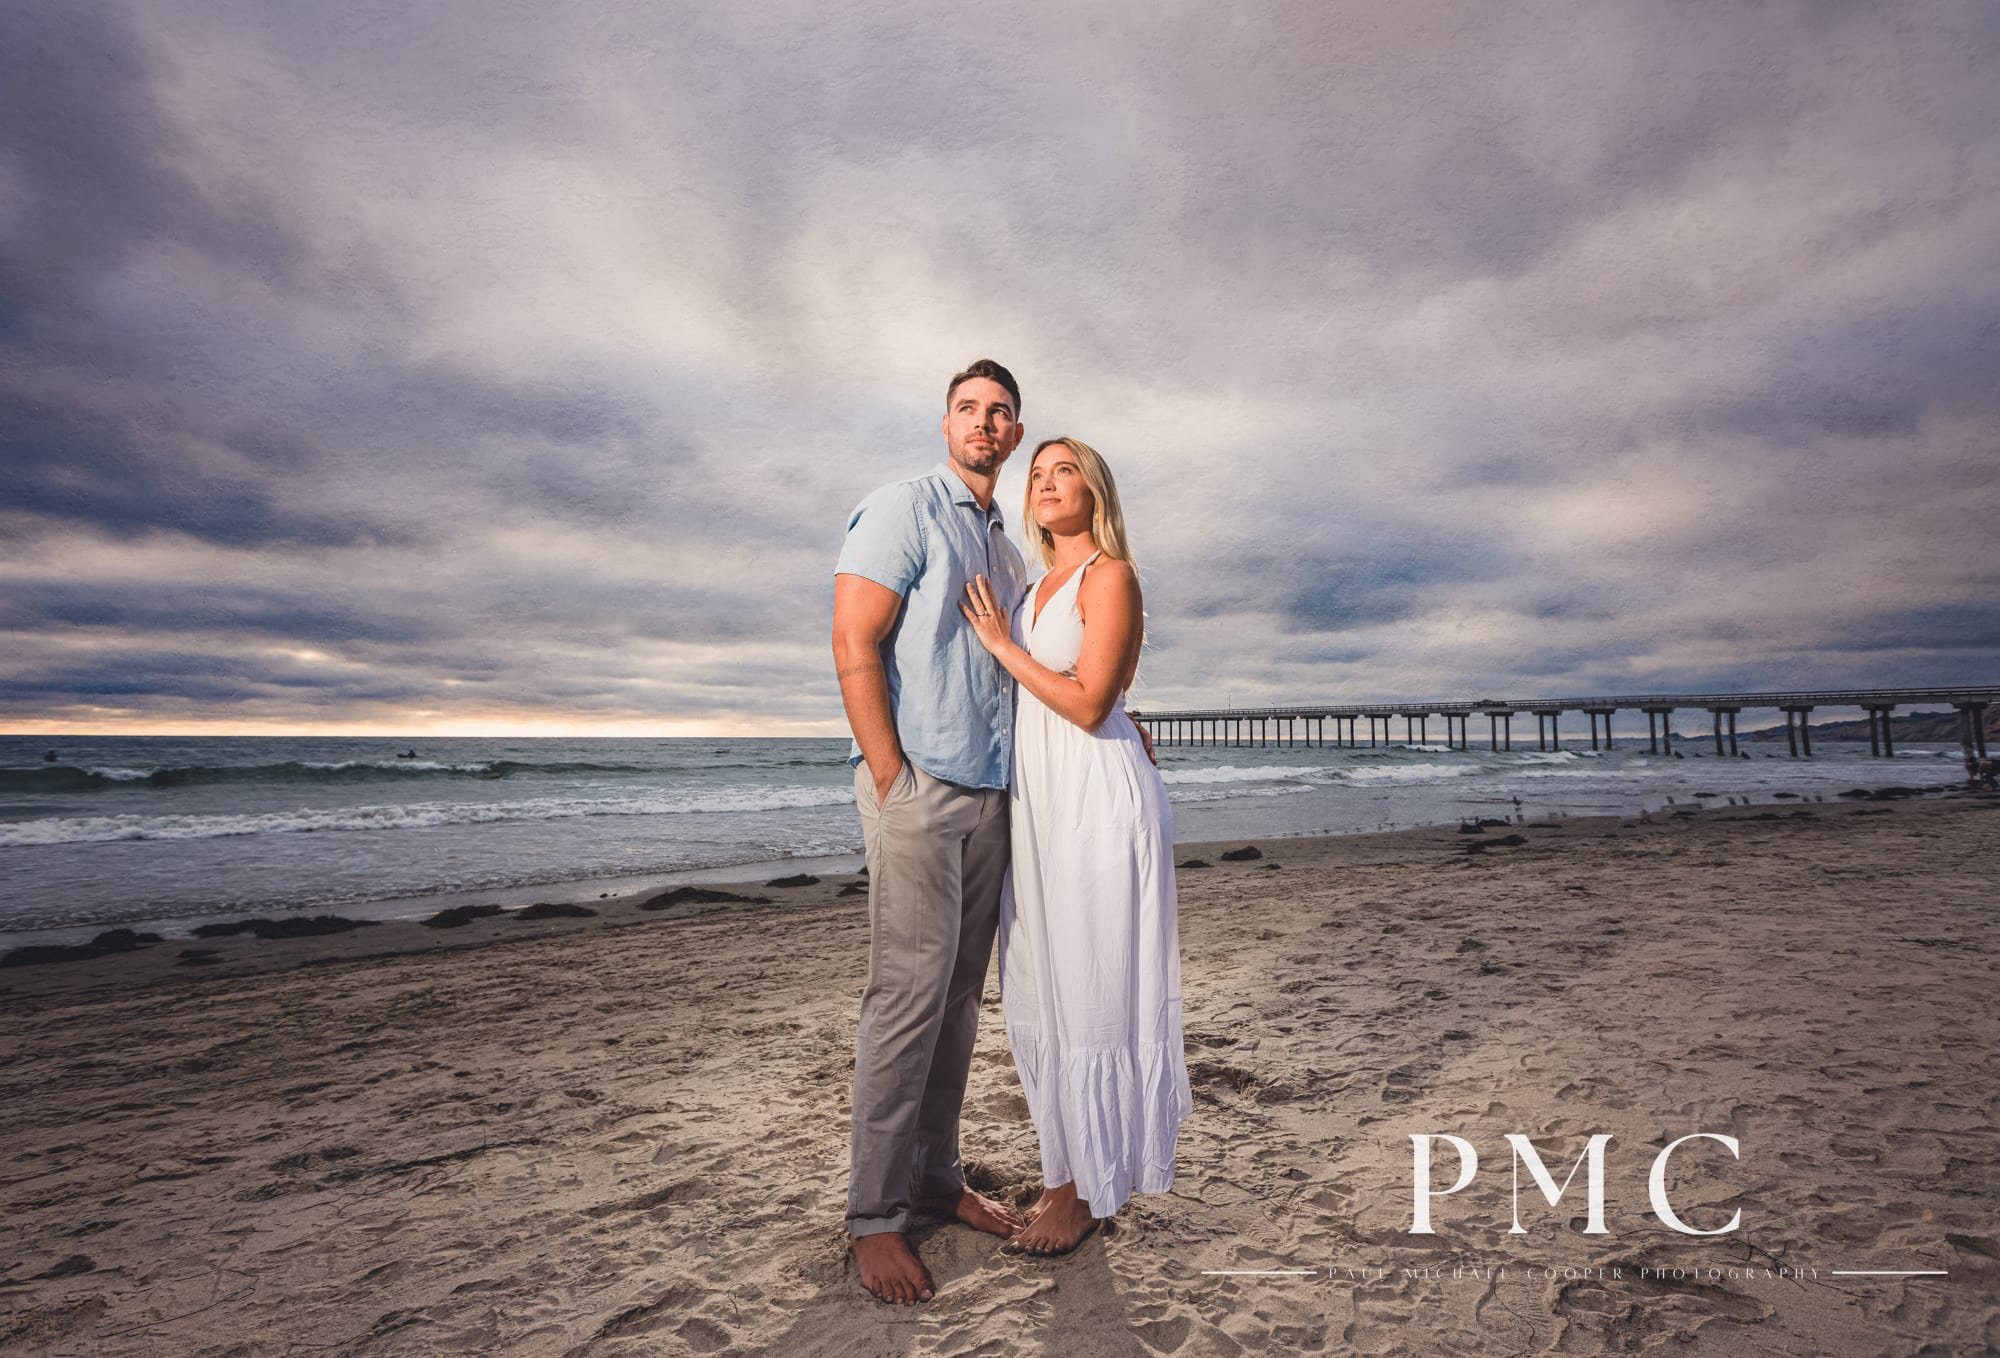 Scripps Pier Engagement Session - La Jolla - Best San Diego Wedding Photographer-6.jpg